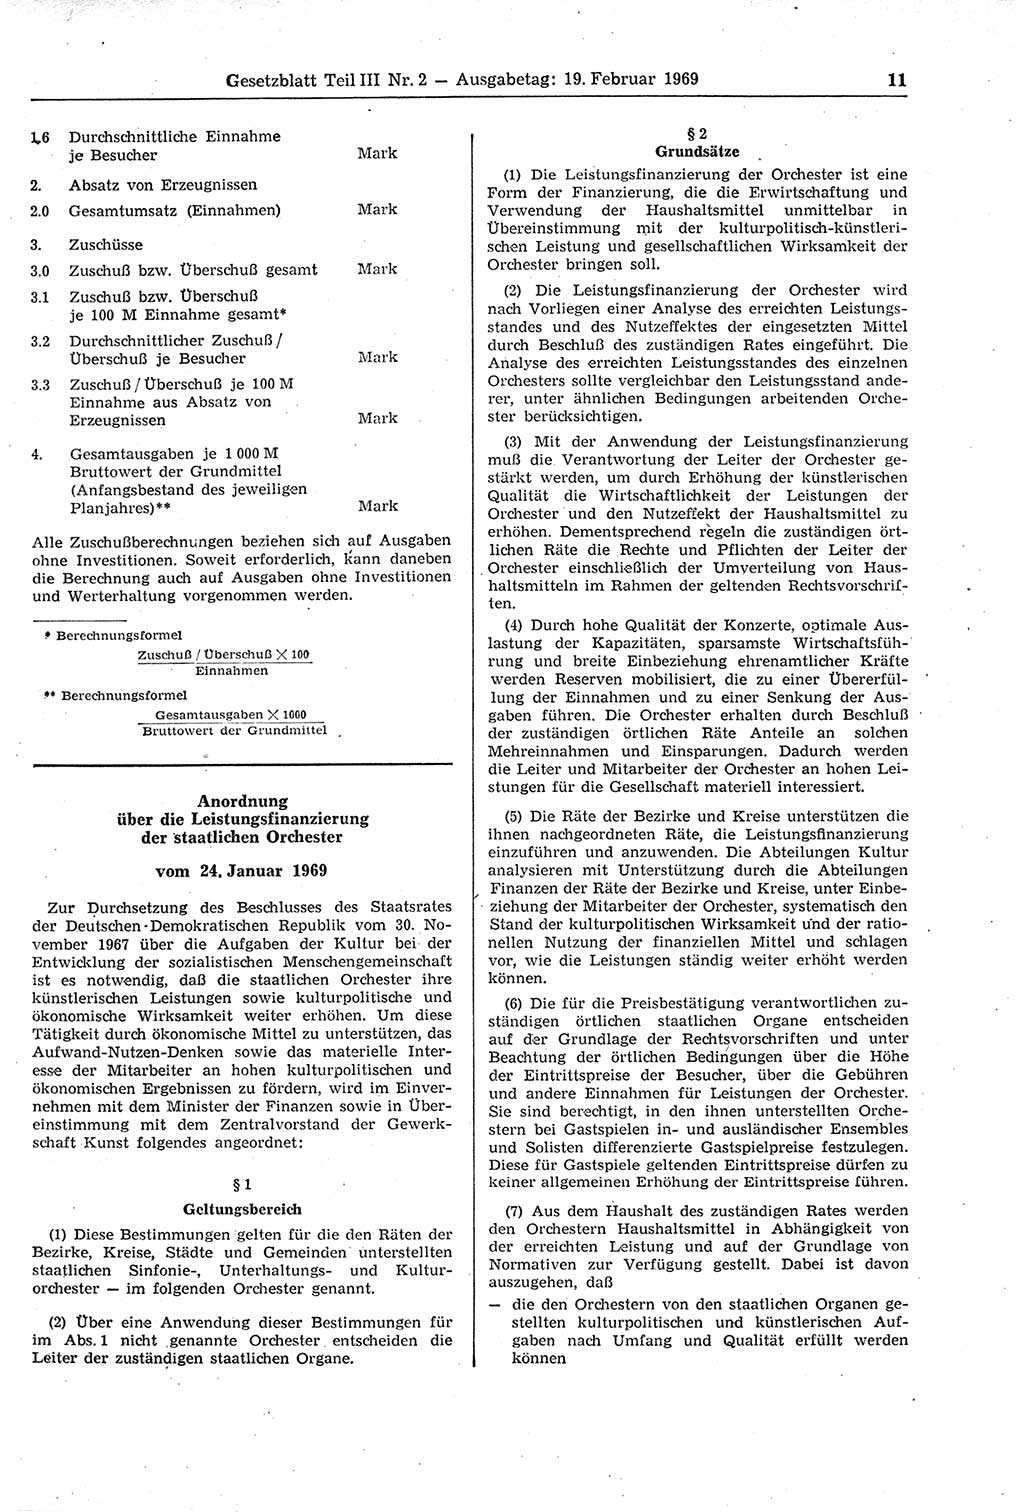 Gesetzblatt (GBl.) der Deutschen Demokratischen Republik (DDR) Teil ⅠⅠⅠ 1969, Seite 11 (GBl. DDR ⅠⅠⅠ 1969, S. 11)